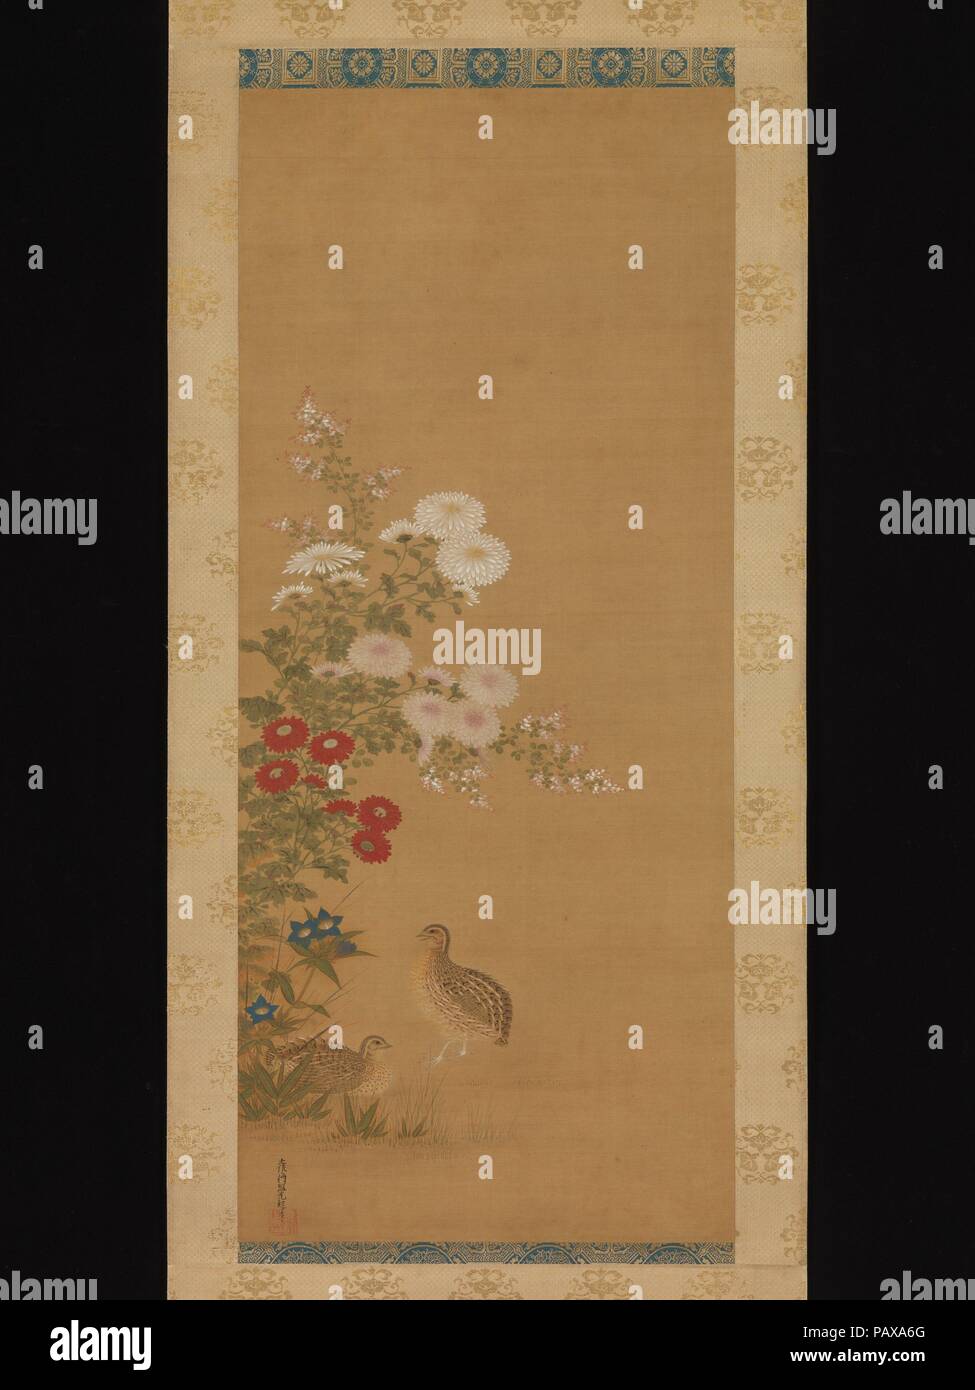 La caille et fleurs d'automne. Artiste : Tosa Mitsuoki (japonais, 1617-1691). Culture : le Japon. Dimensions : 38 1/2 x 16 3/8 in. (97,8 x 41,6 cm). Date : fin du 17ème siècle. Élégant dans leur propre droit, des chrysanthèmes apparaissent souvent en même temps que les cailles en peinture. La combinaison était particulièrement favorisé par des artistes chinois Song du Sud, comme elle signifiait que la paix et la longévité. Avec chysanthemums, la représentation d'autres fleurs d'automne, tels que bush clover (hagi) et chinois (campanules) kikyo, crée un réglage saisonnier pour le couple d'oiseaux. La peinture est signée par Tosa Mitsuoki, un maître de jewel-l Banque D'Images